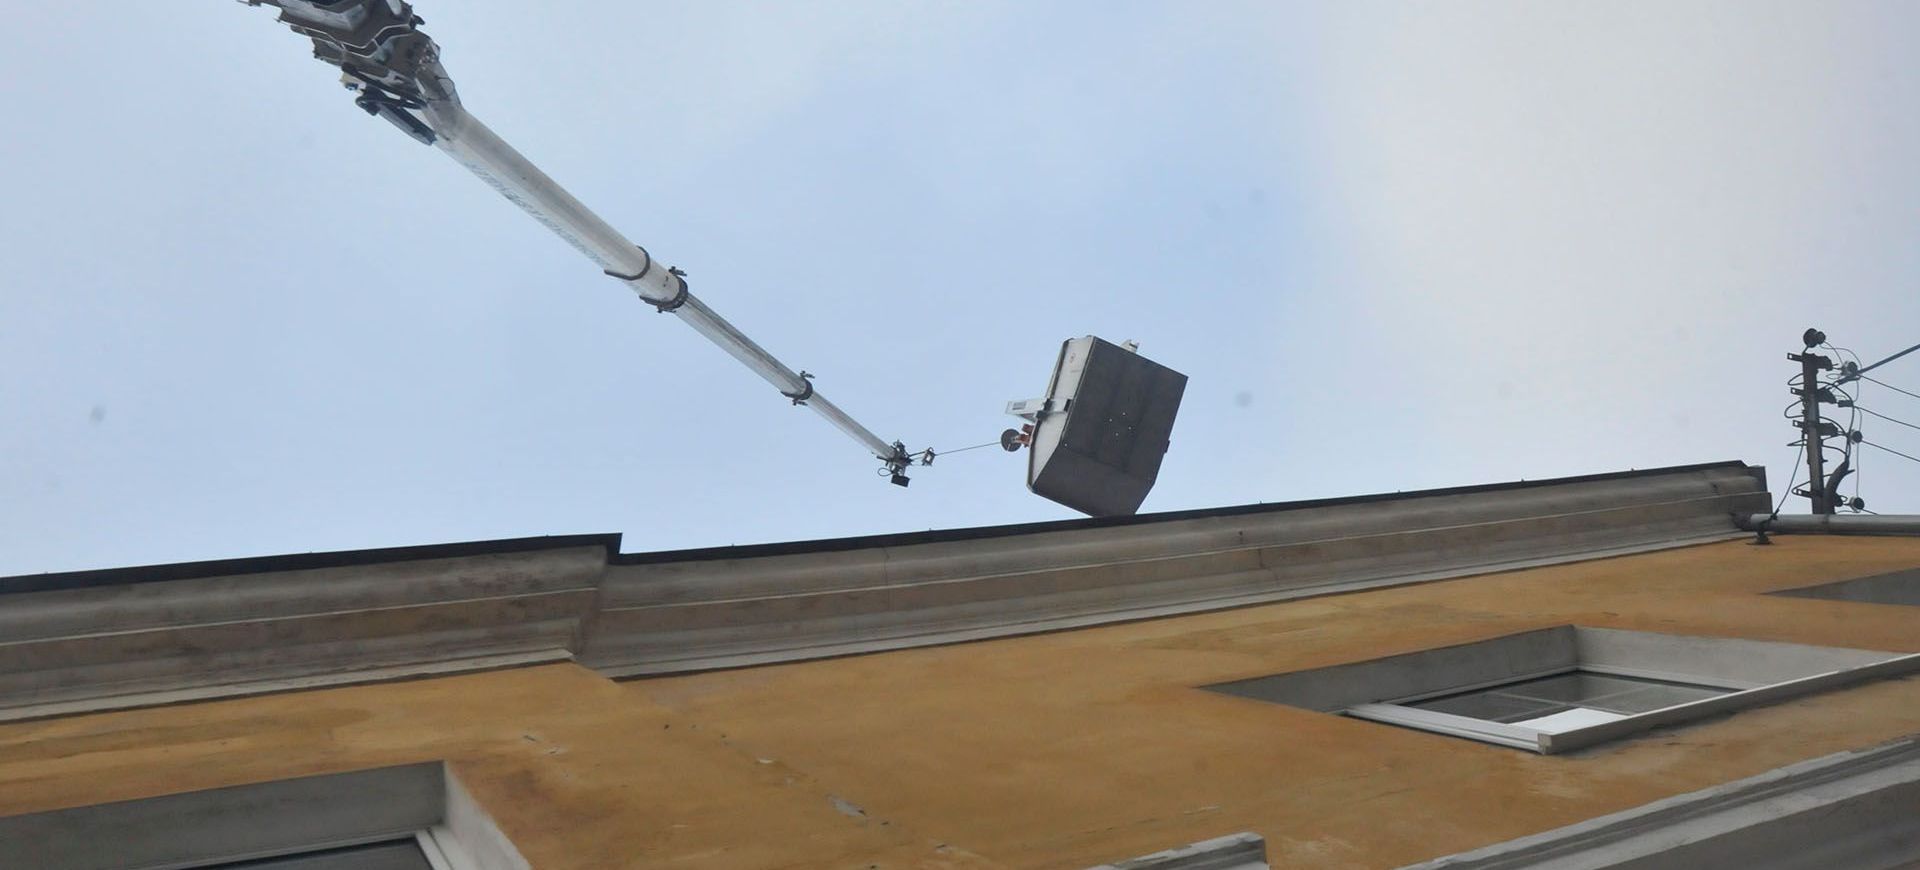 Ein Kran hebt Materialien auf ein Dach